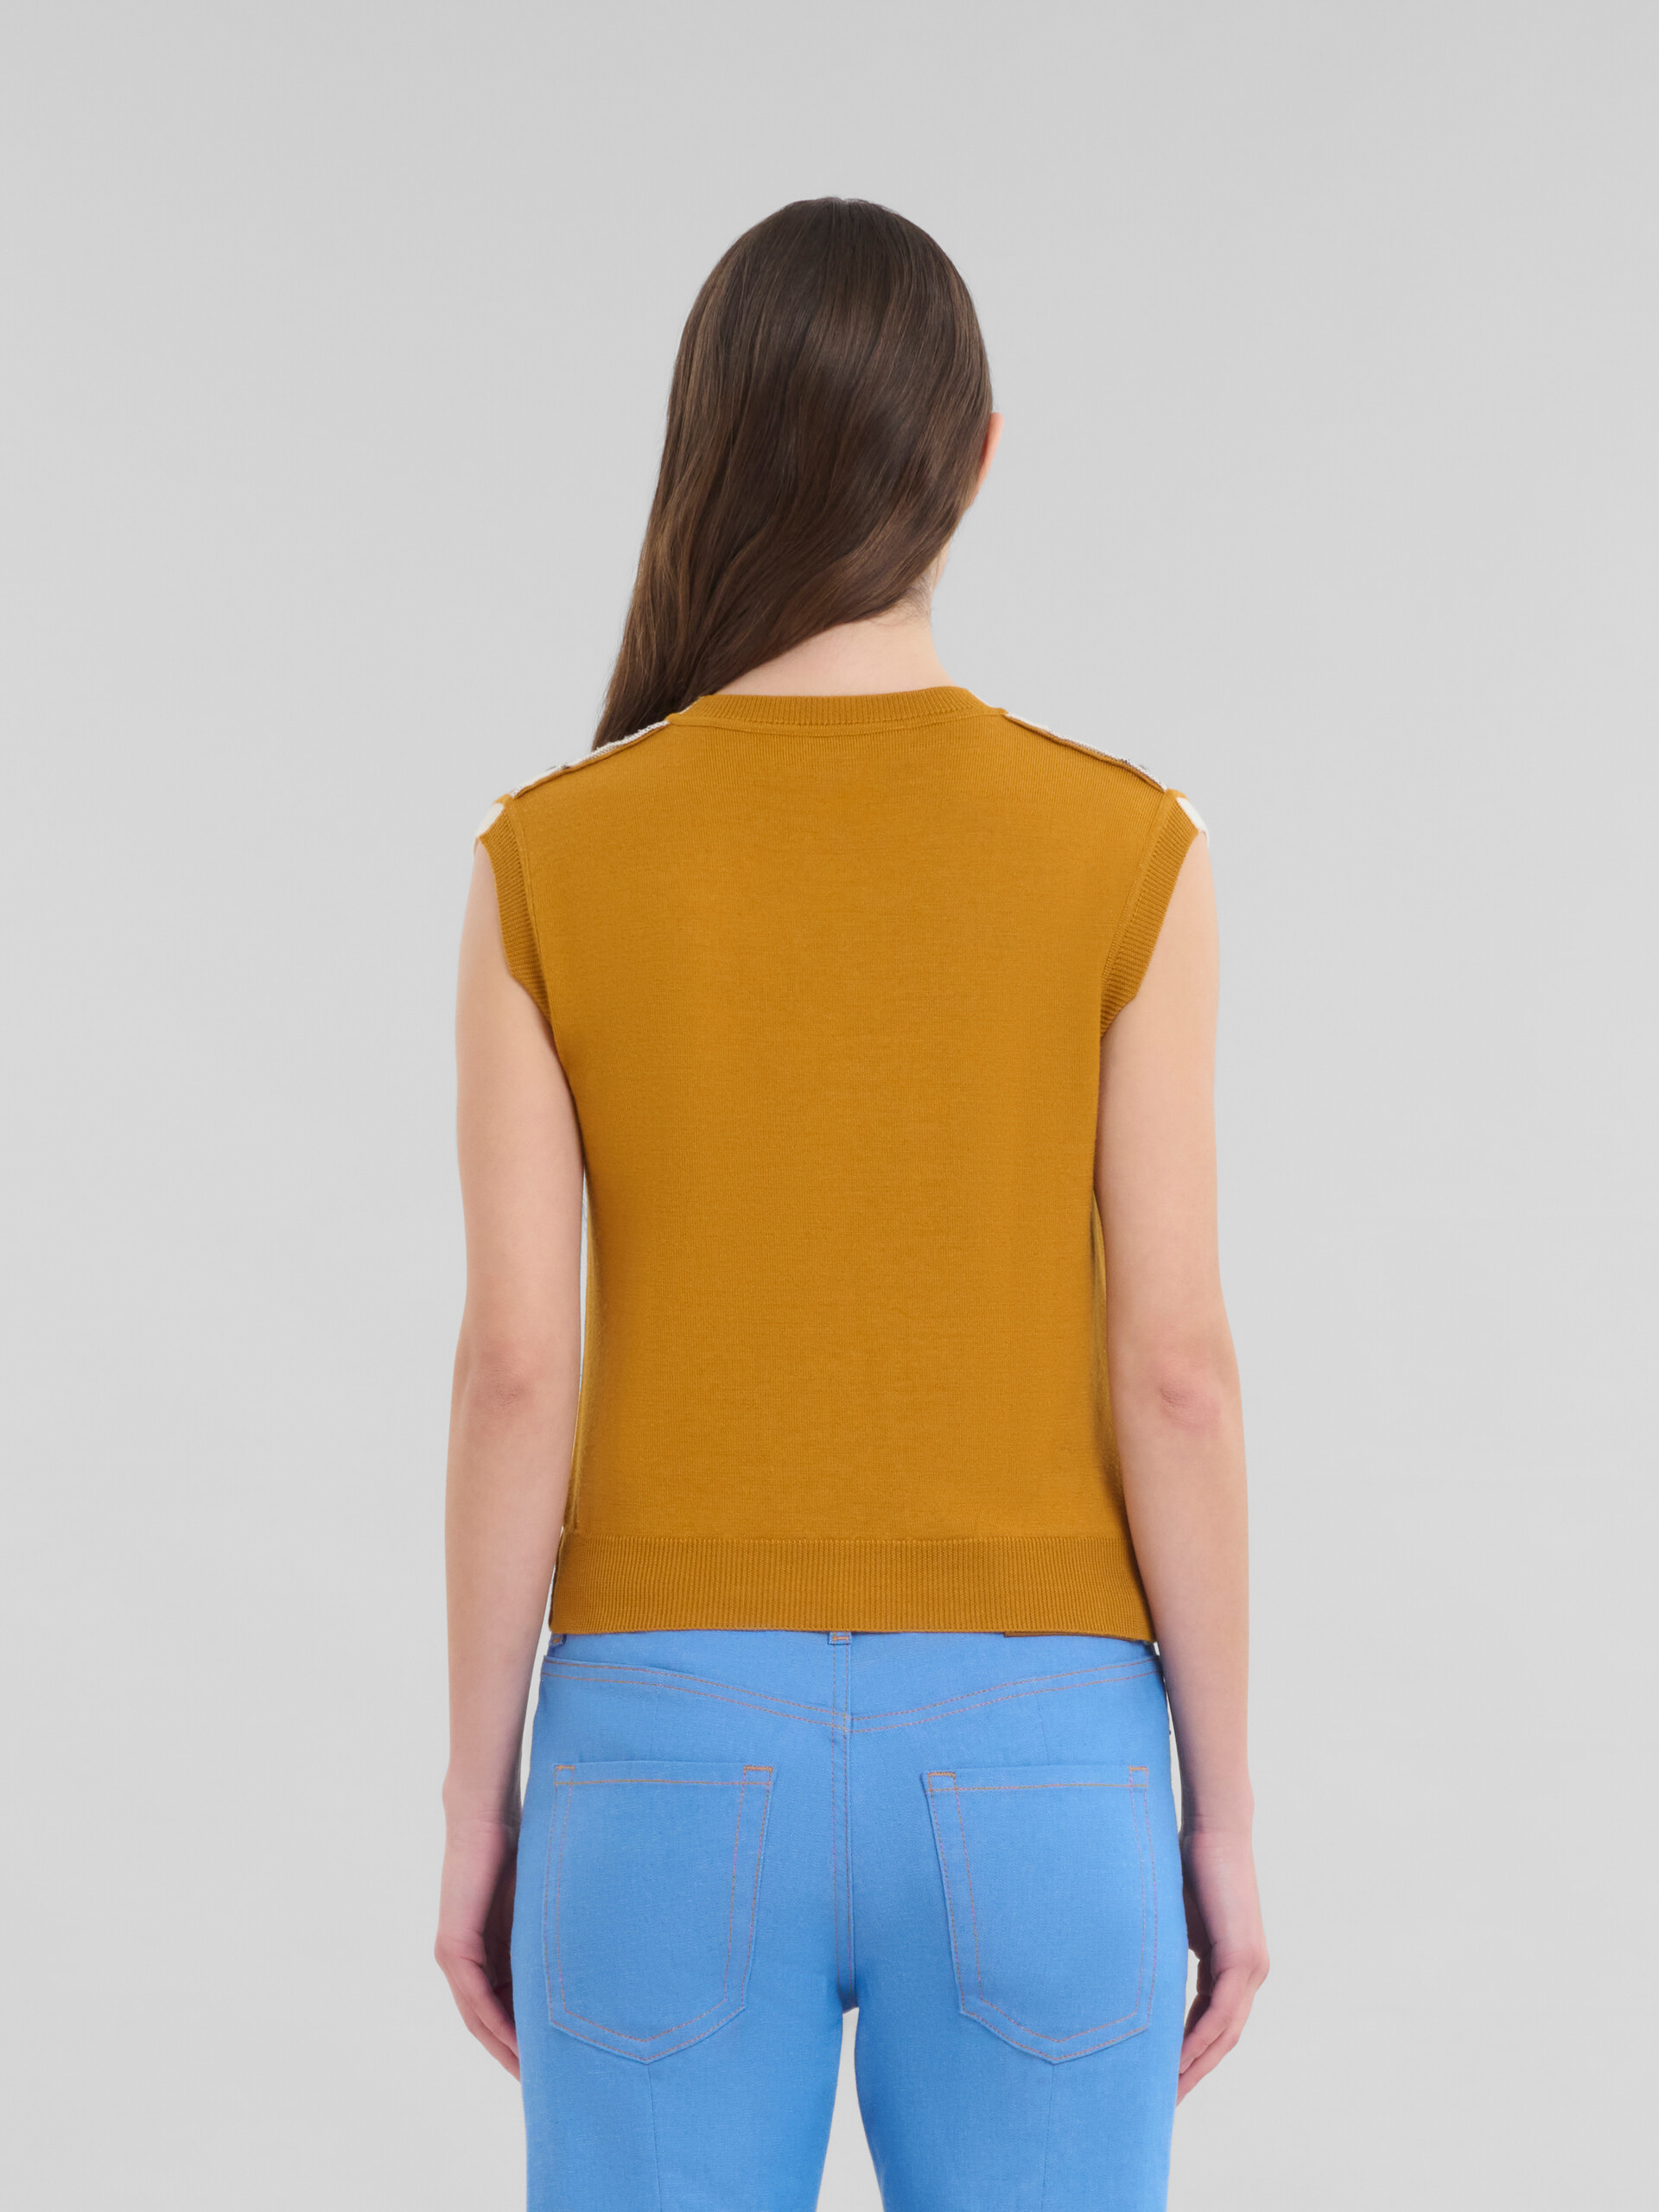 Orange-weiß karierte Weste aus Wolle - Pullover - Image 3